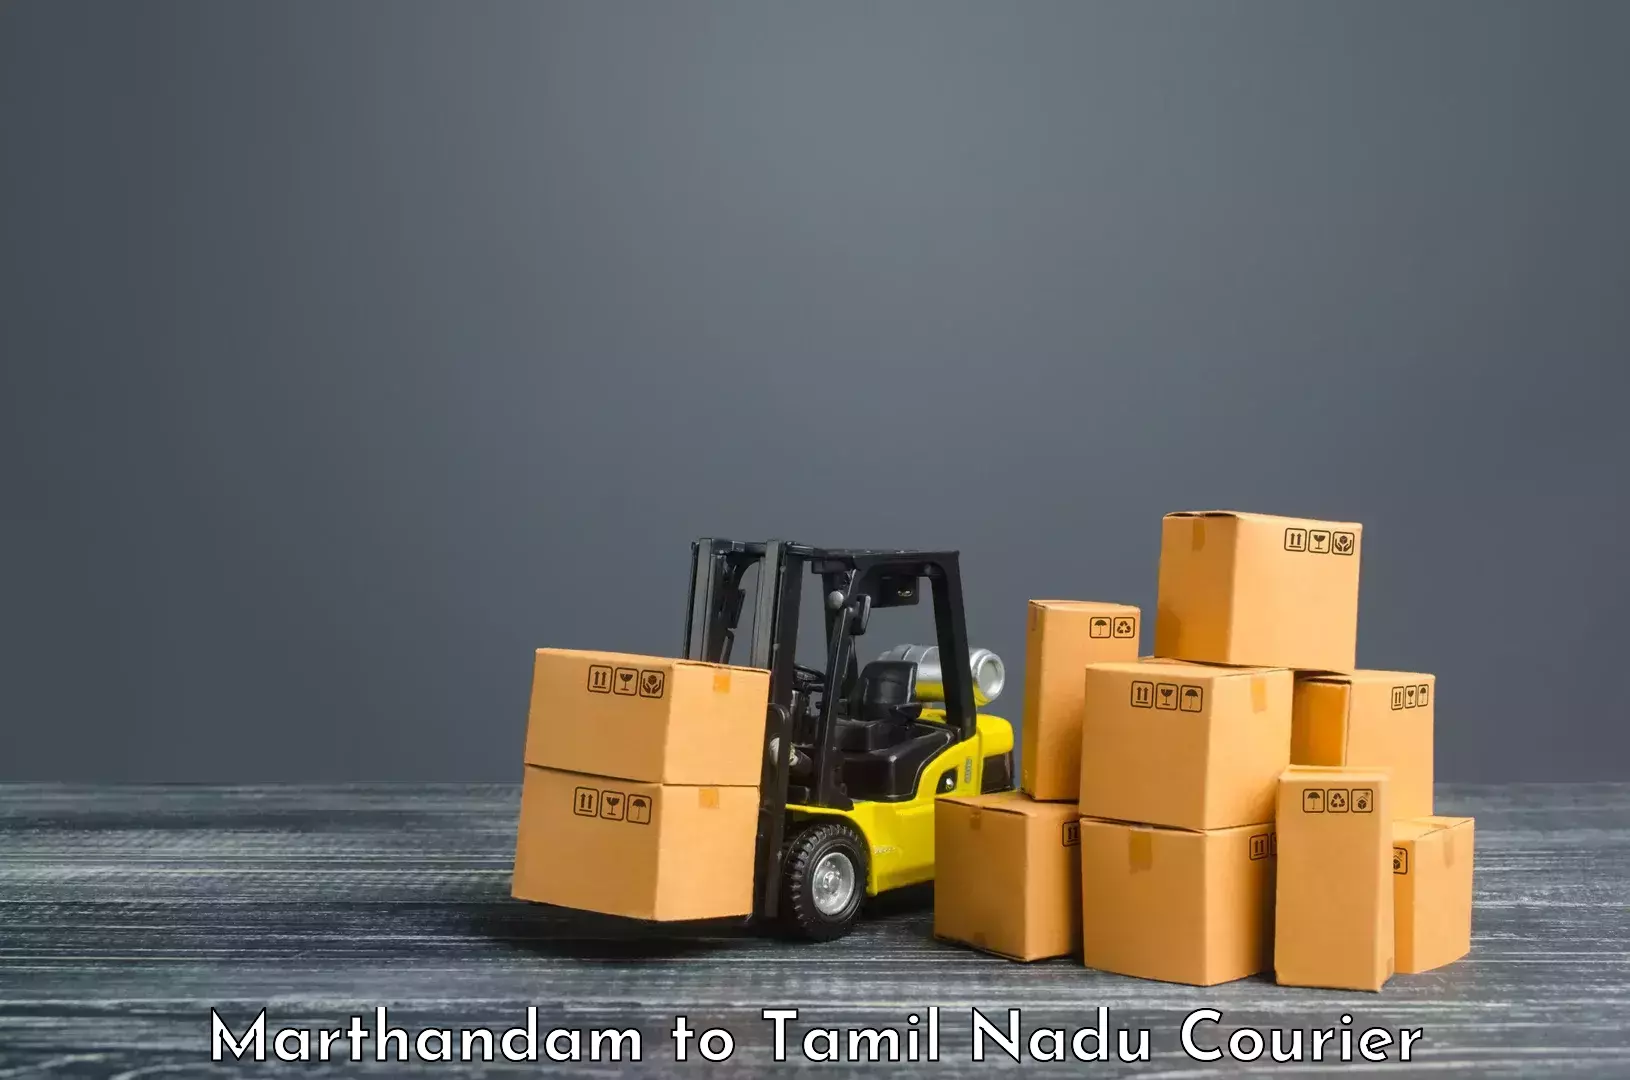 Next-generation courier services Marthandam to The Gandhigram Rural Institute